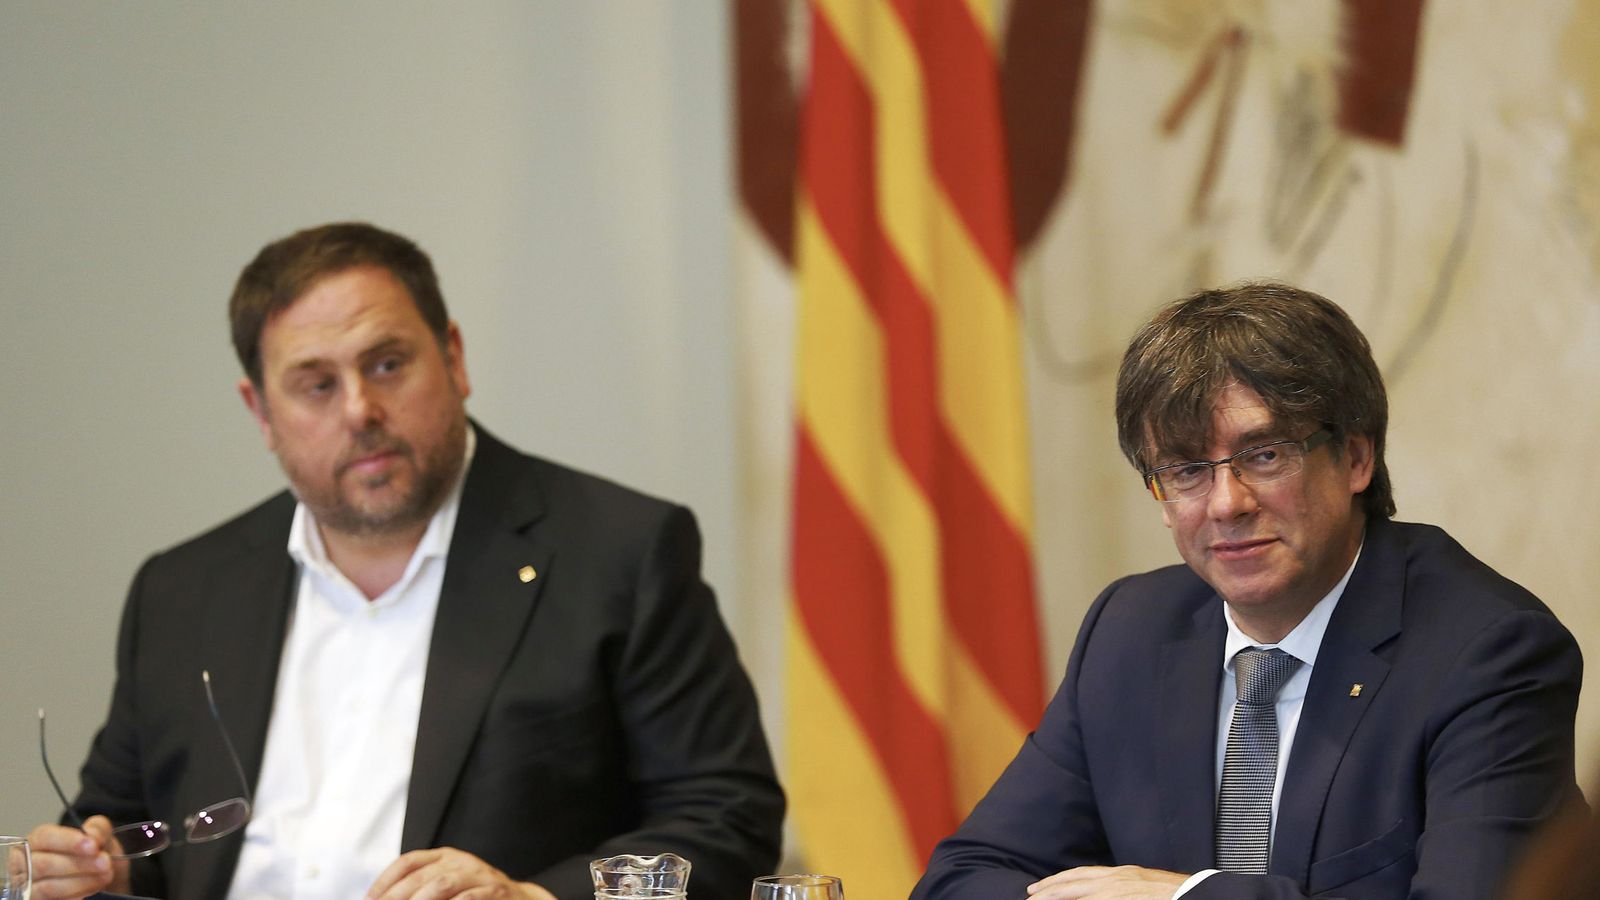 Foto: El presidente de la Generalitat, Carles Puigdemont, y su vicepresidente, Oriol Junqueras (i), durante la reunión semanal del Gobierno catalán. (EFE)